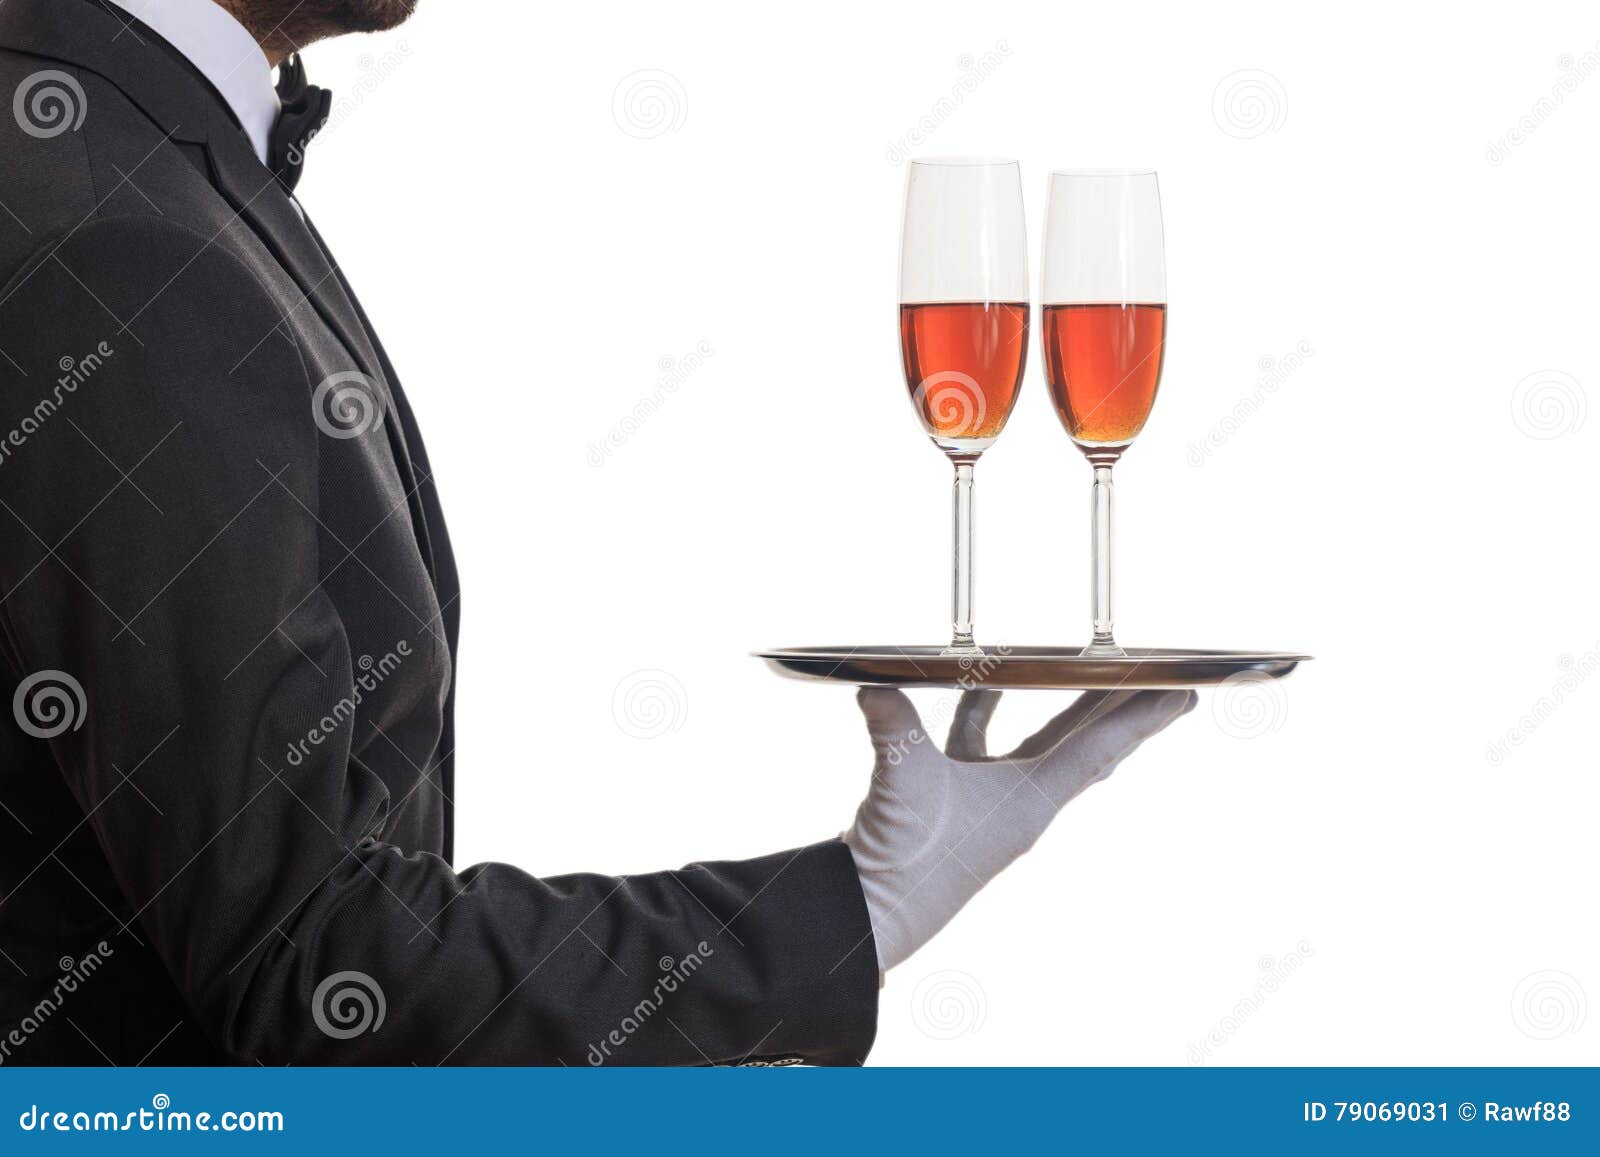 Воды и хлеба дай официант. Поднос с бокалами. Официант с вином. Рука официанта с подносом. Поднос для вина и бокалов.